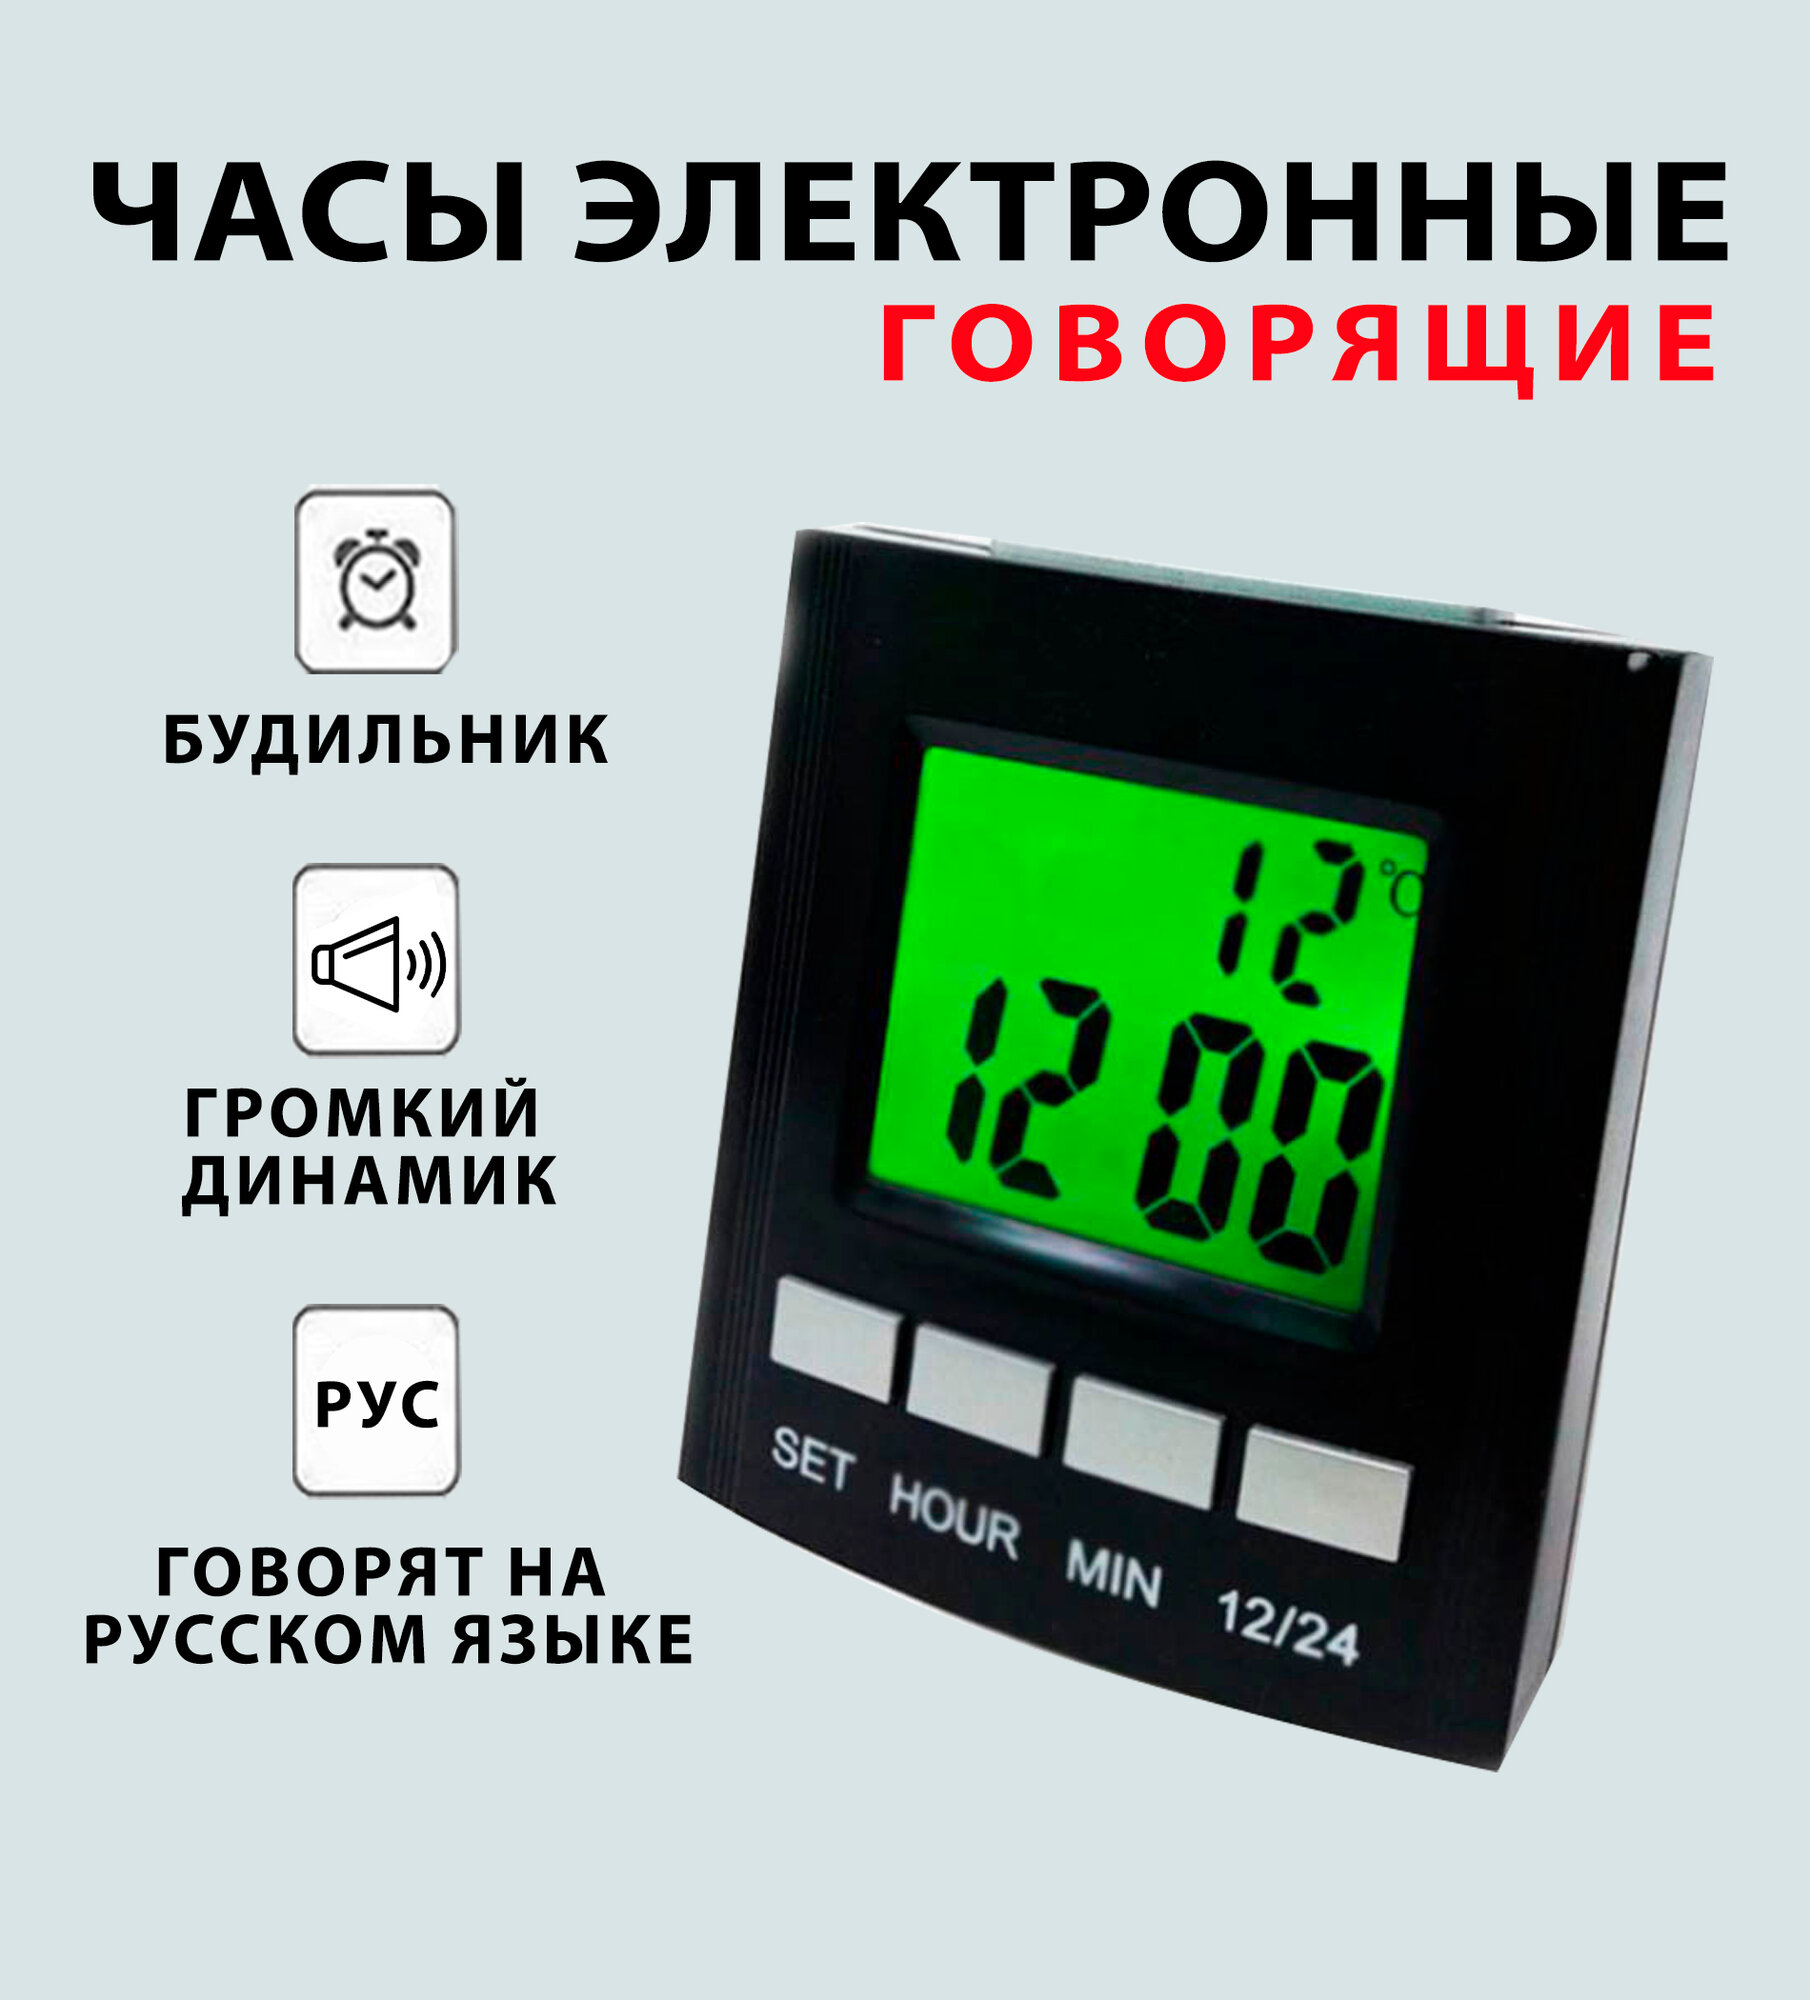 Электронный говорящий будильник / Часы для слабовидящих / Термометр/ SH-691, зеленая подсветка